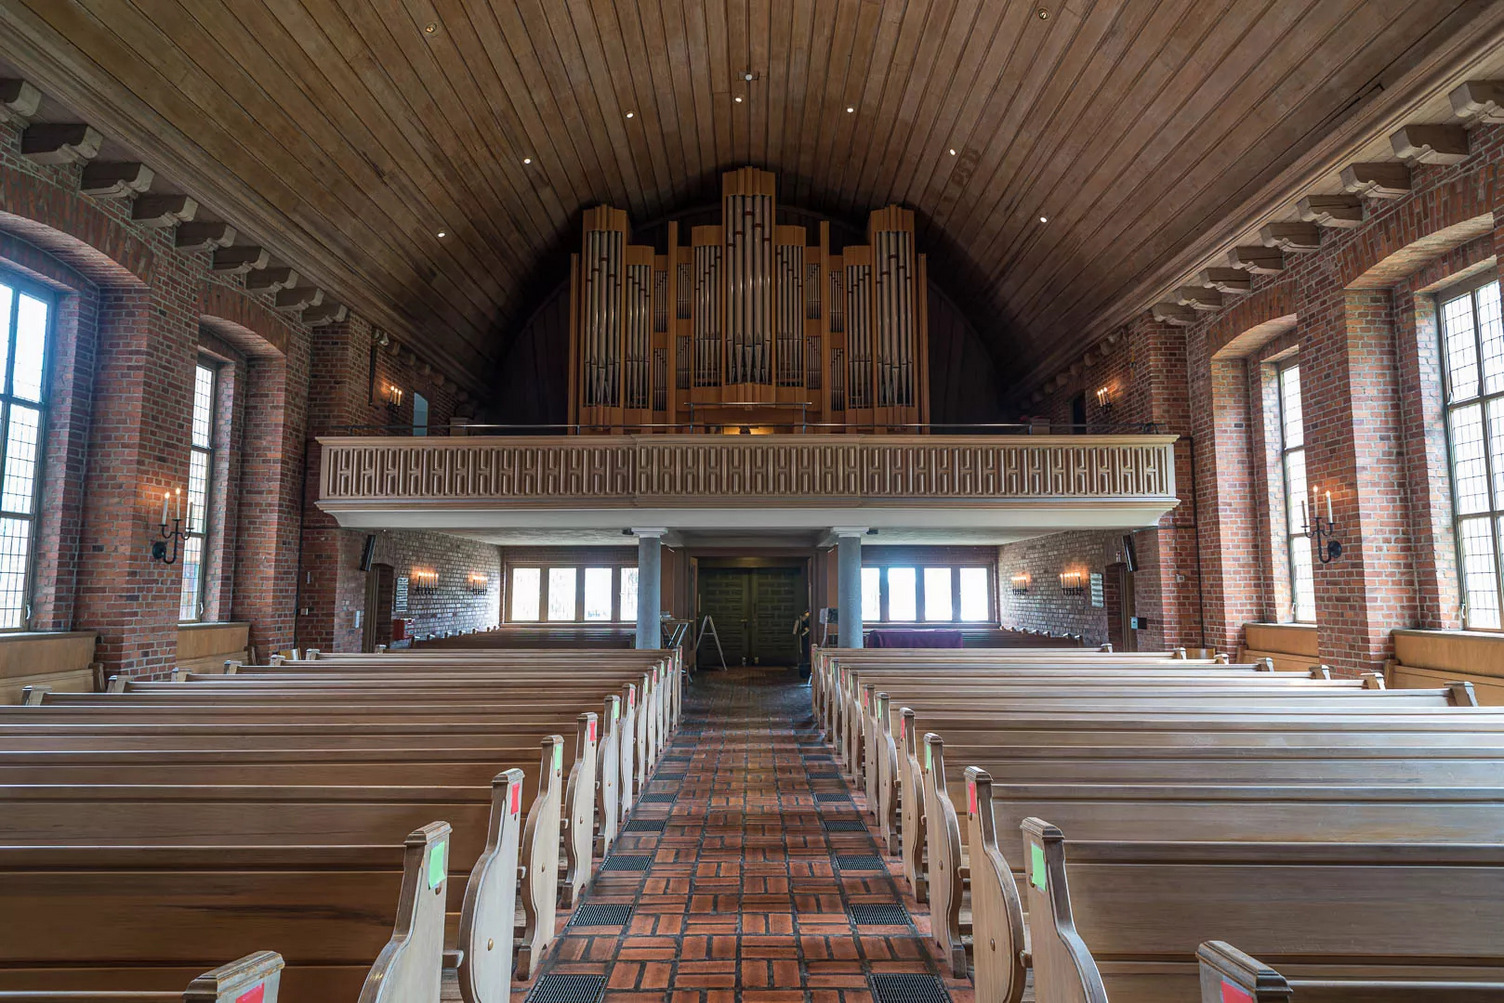 Kirchenraum mit Orgel im Hintergrund.